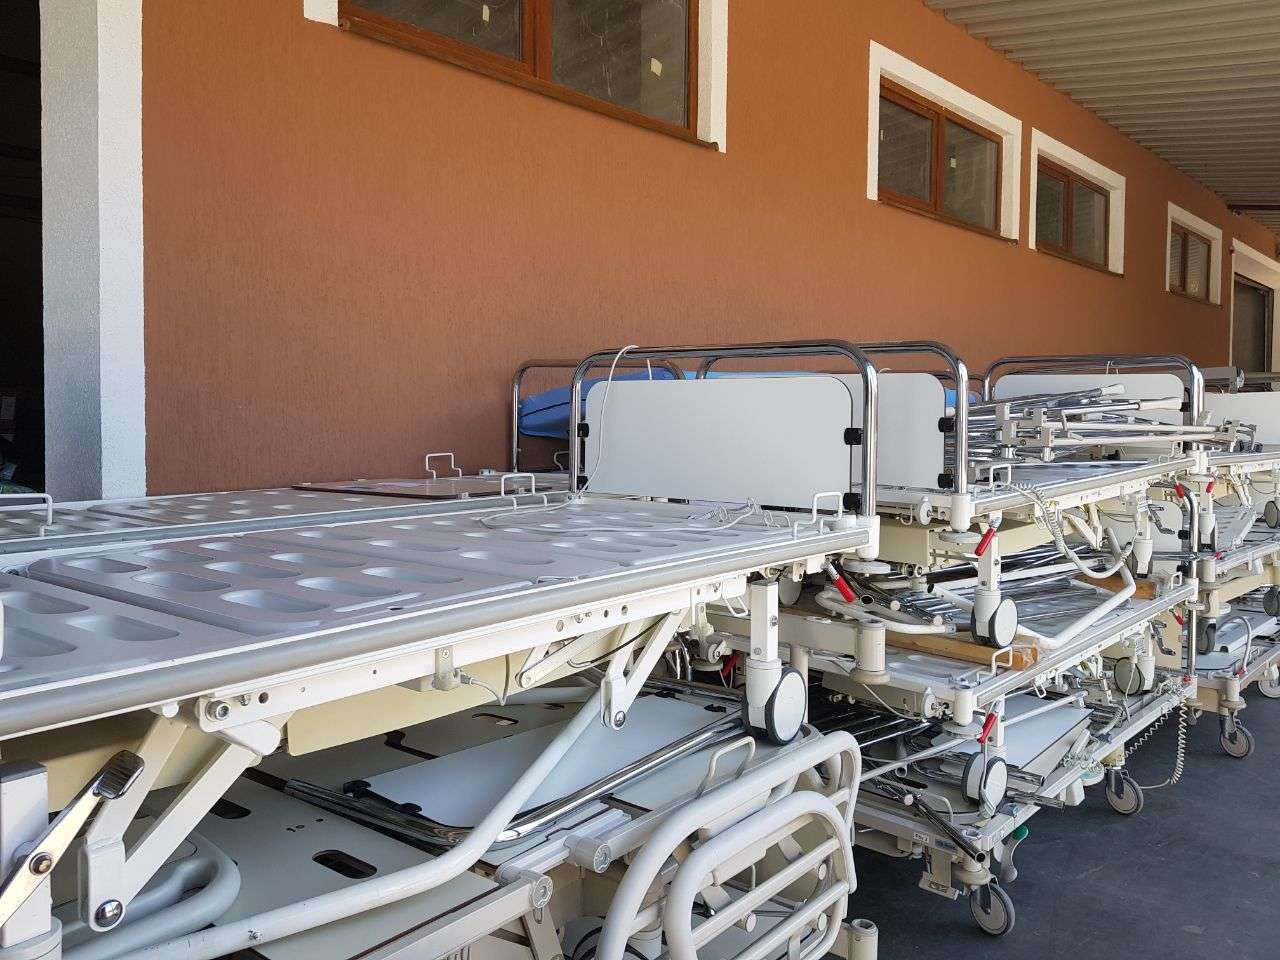 Ще один вантаж з медичними ліжками передано українським лікарням від австрійських волонтерів